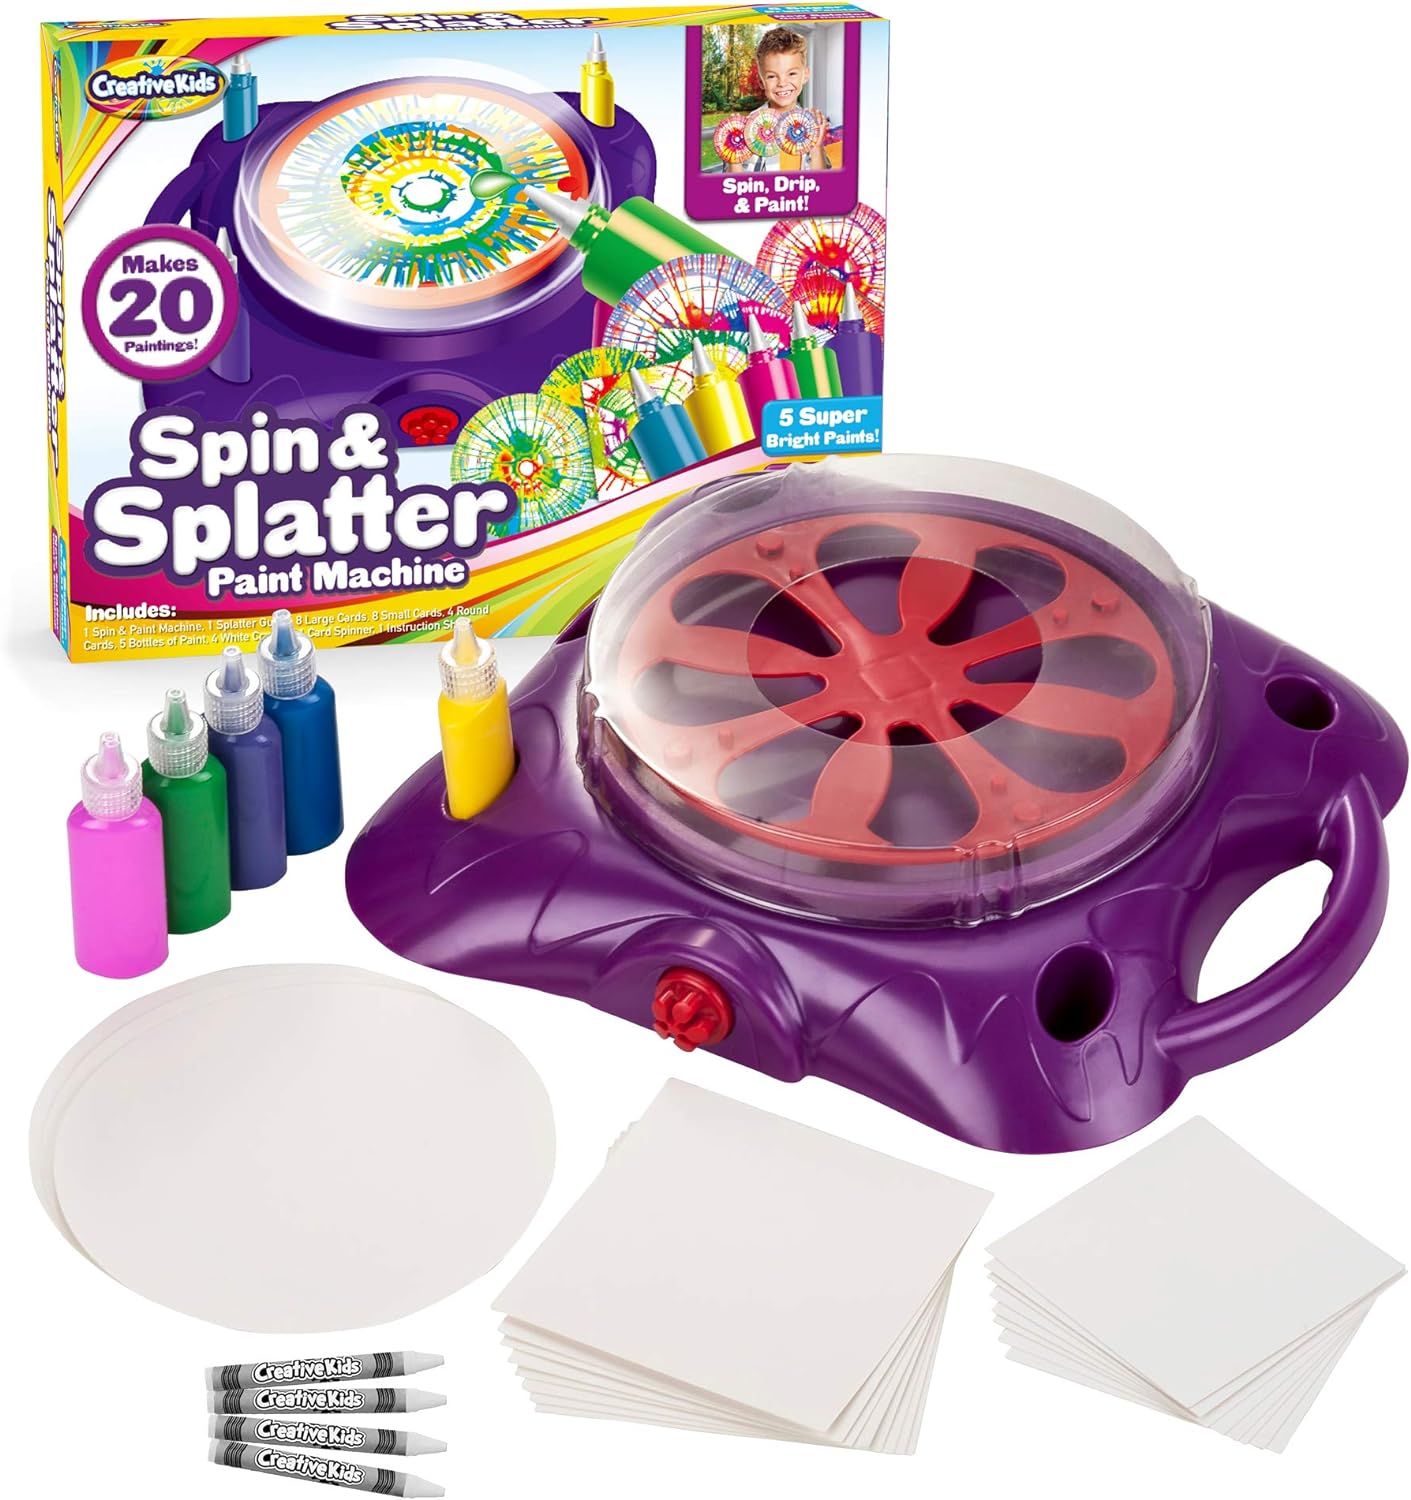 Spin & Splatter